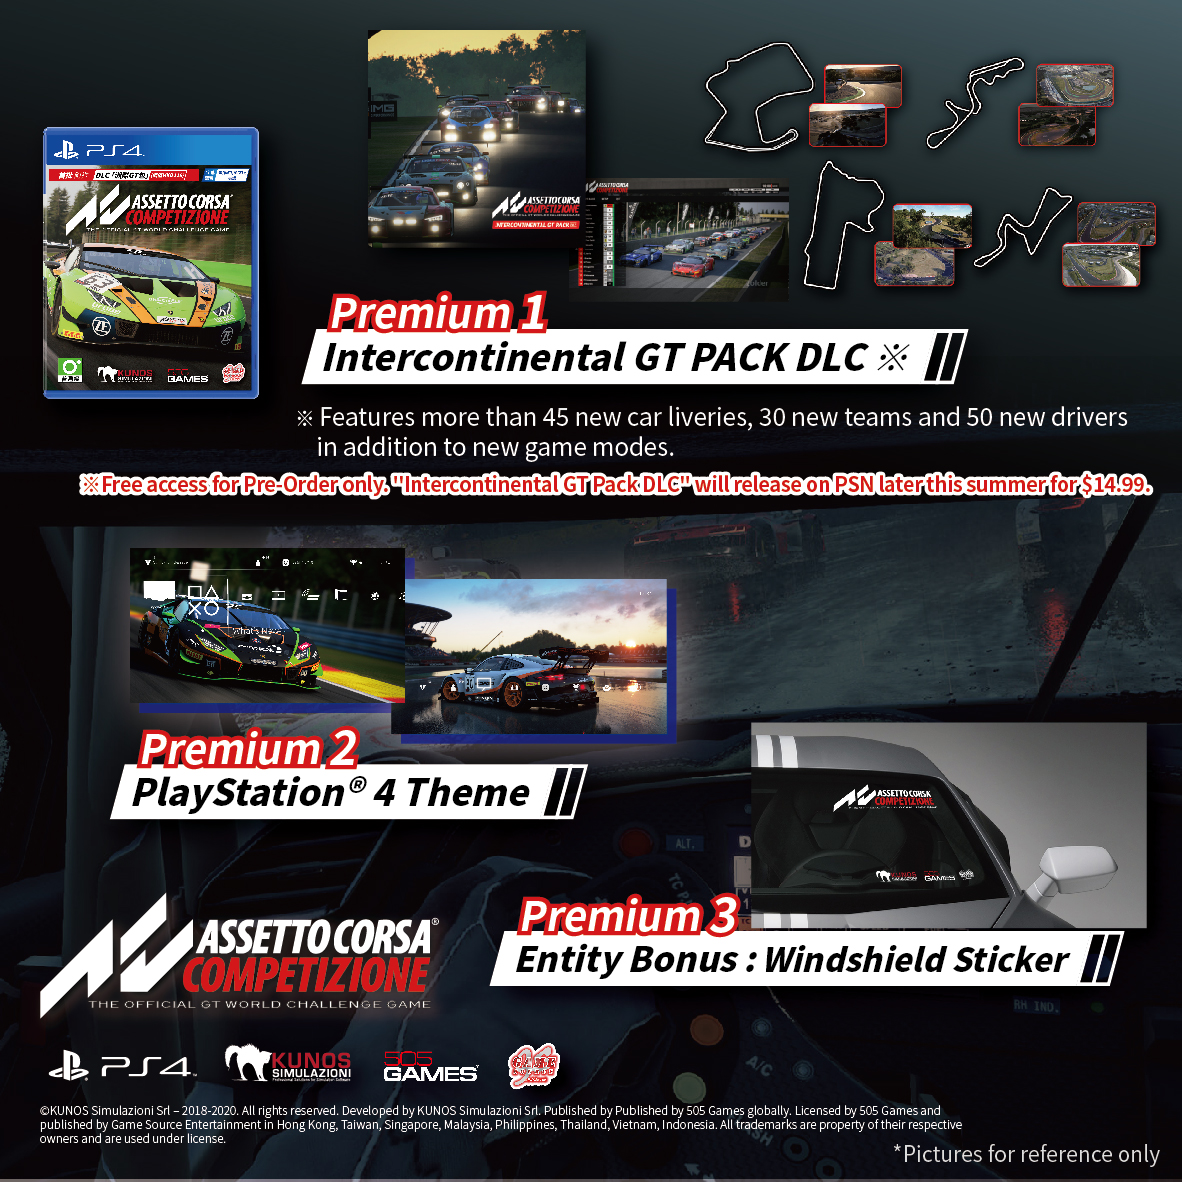 PS4 《 Assetto Corsa Competizione》 Pre-order Bonus and DLC Content